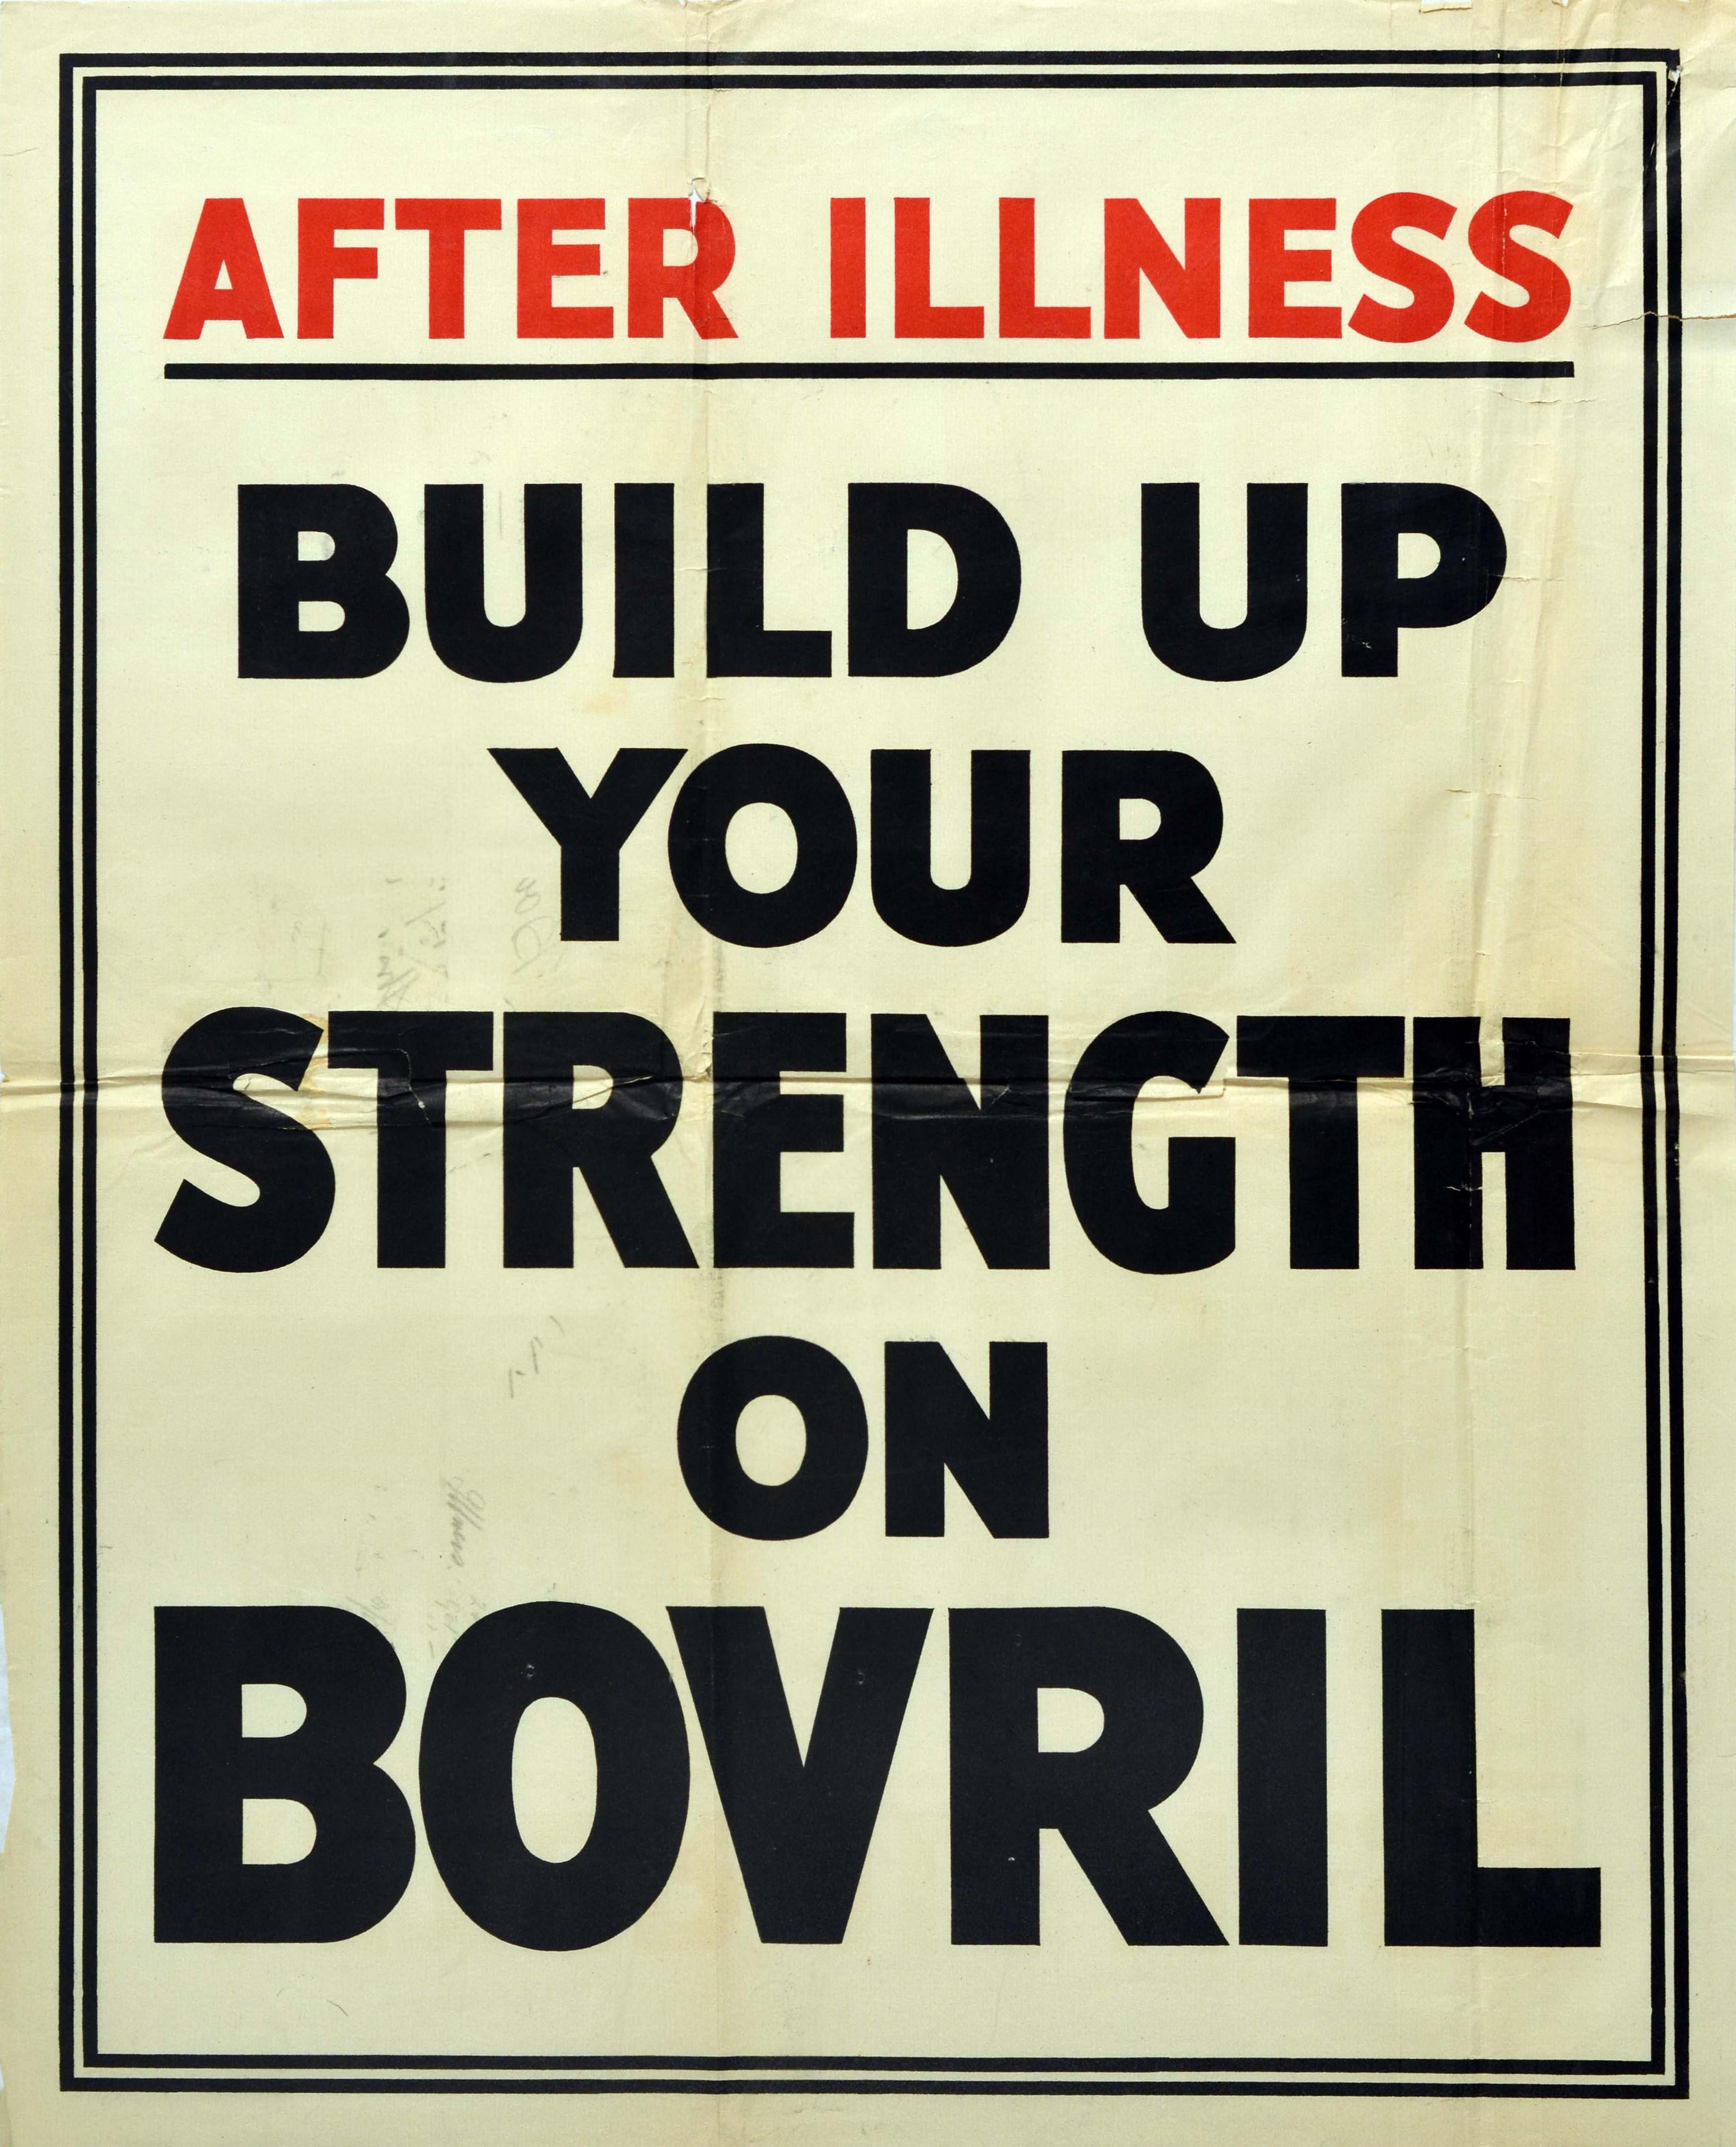 Affiche publicitaire vintage originale pour Bovril - After illness build up your strength on Bovril - avec des lettres noires et rouges sur un fond blanc et un cadre noir à double ligne. Imprimée en Grande-Bretagne dans les années 1930, cette